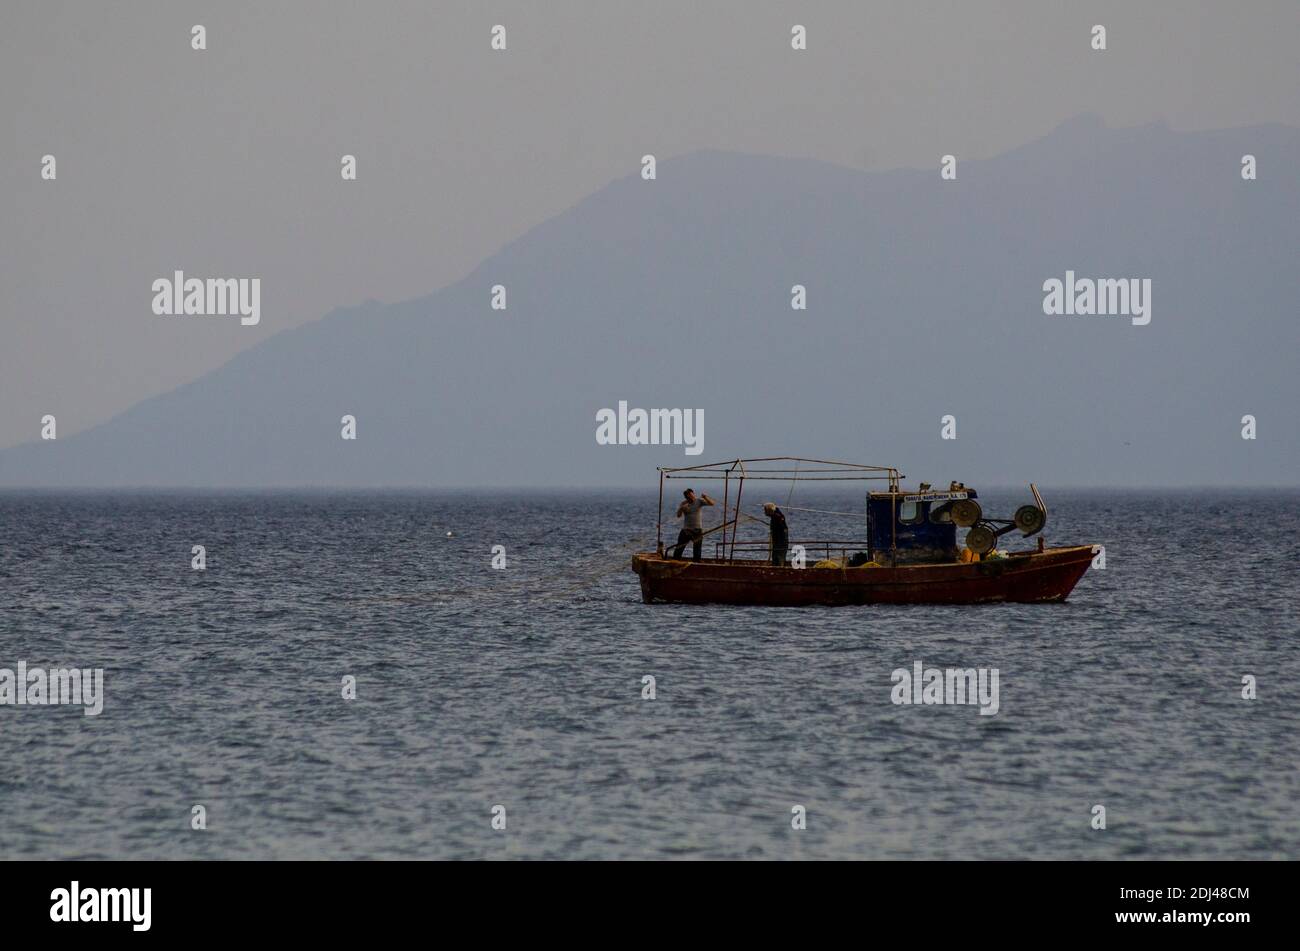 ALEXANDROUPOLI, GRECIA - 19 maggio 2020 - pescatori costieri al lavoro sul Mar Egeo al largo di Alexandroupoli, Evros, Grecia - Foto: Geopix Foto Stock